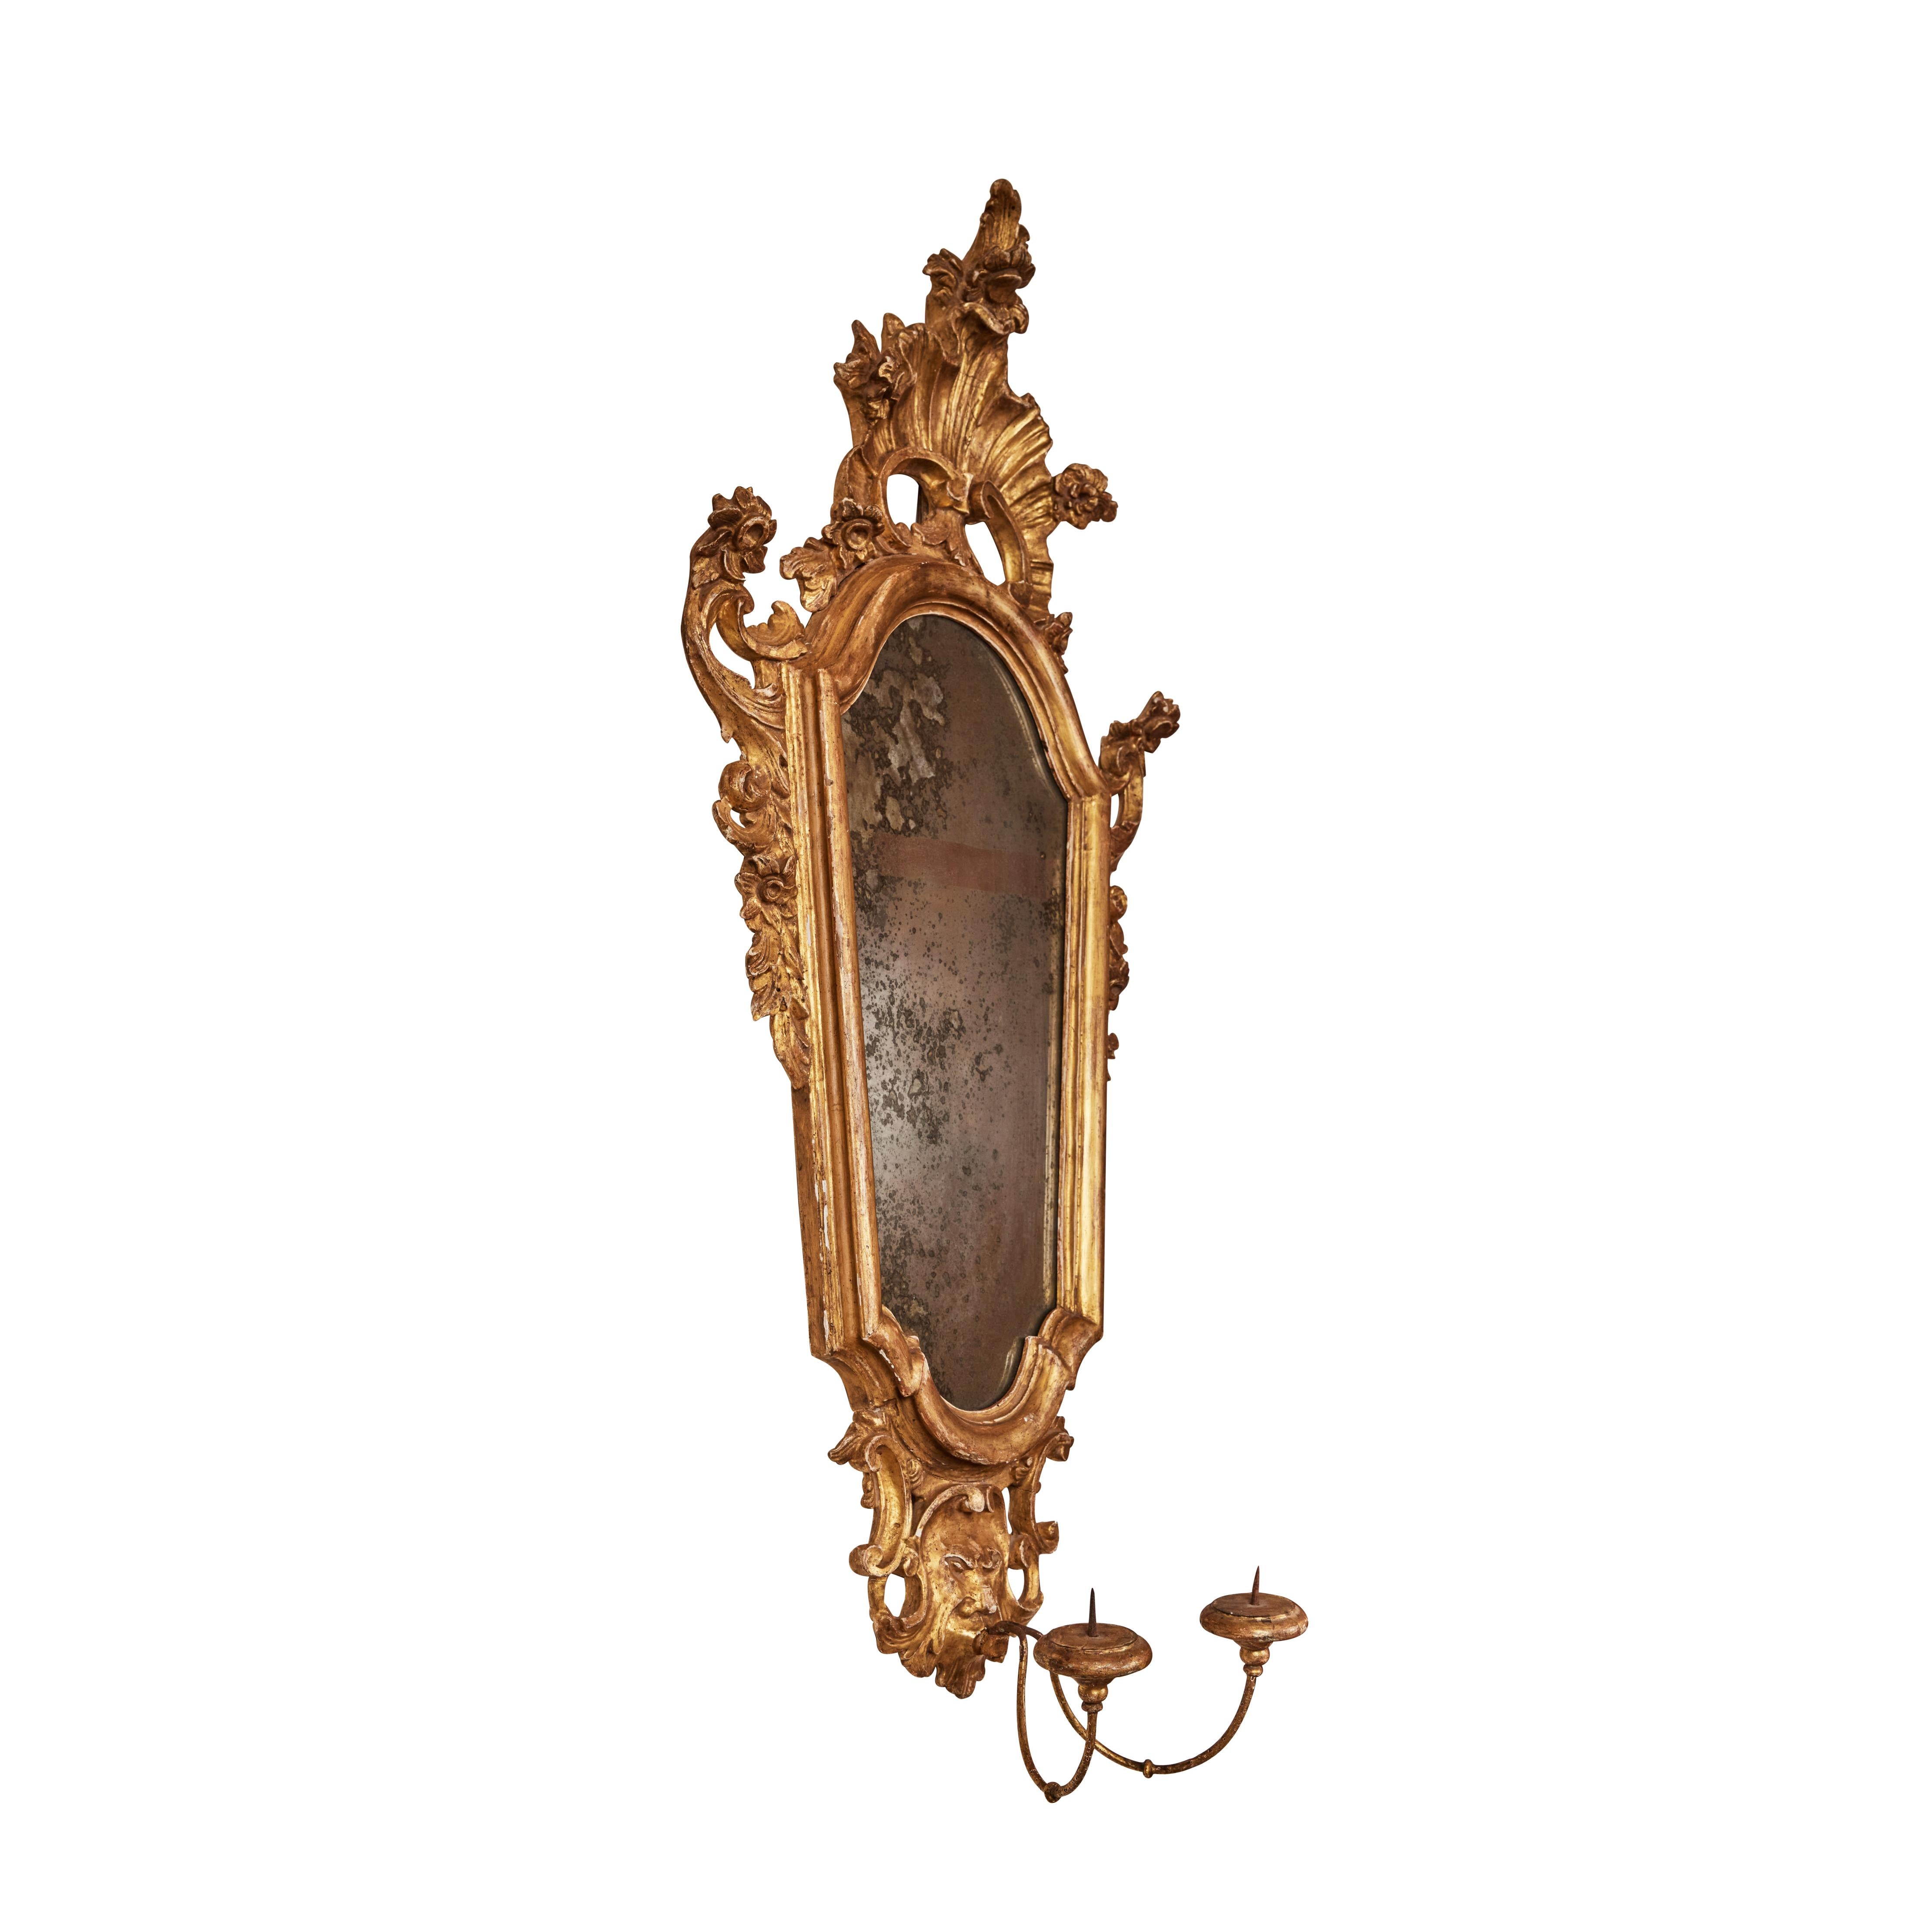 Paire de miroirs à cadre sculptés, gessés et dorés.  Miroir original avec des taches et des pertes d'argenture sur les plaques.  Chandeliers en bois et tole dorée.  De la région de Florence.